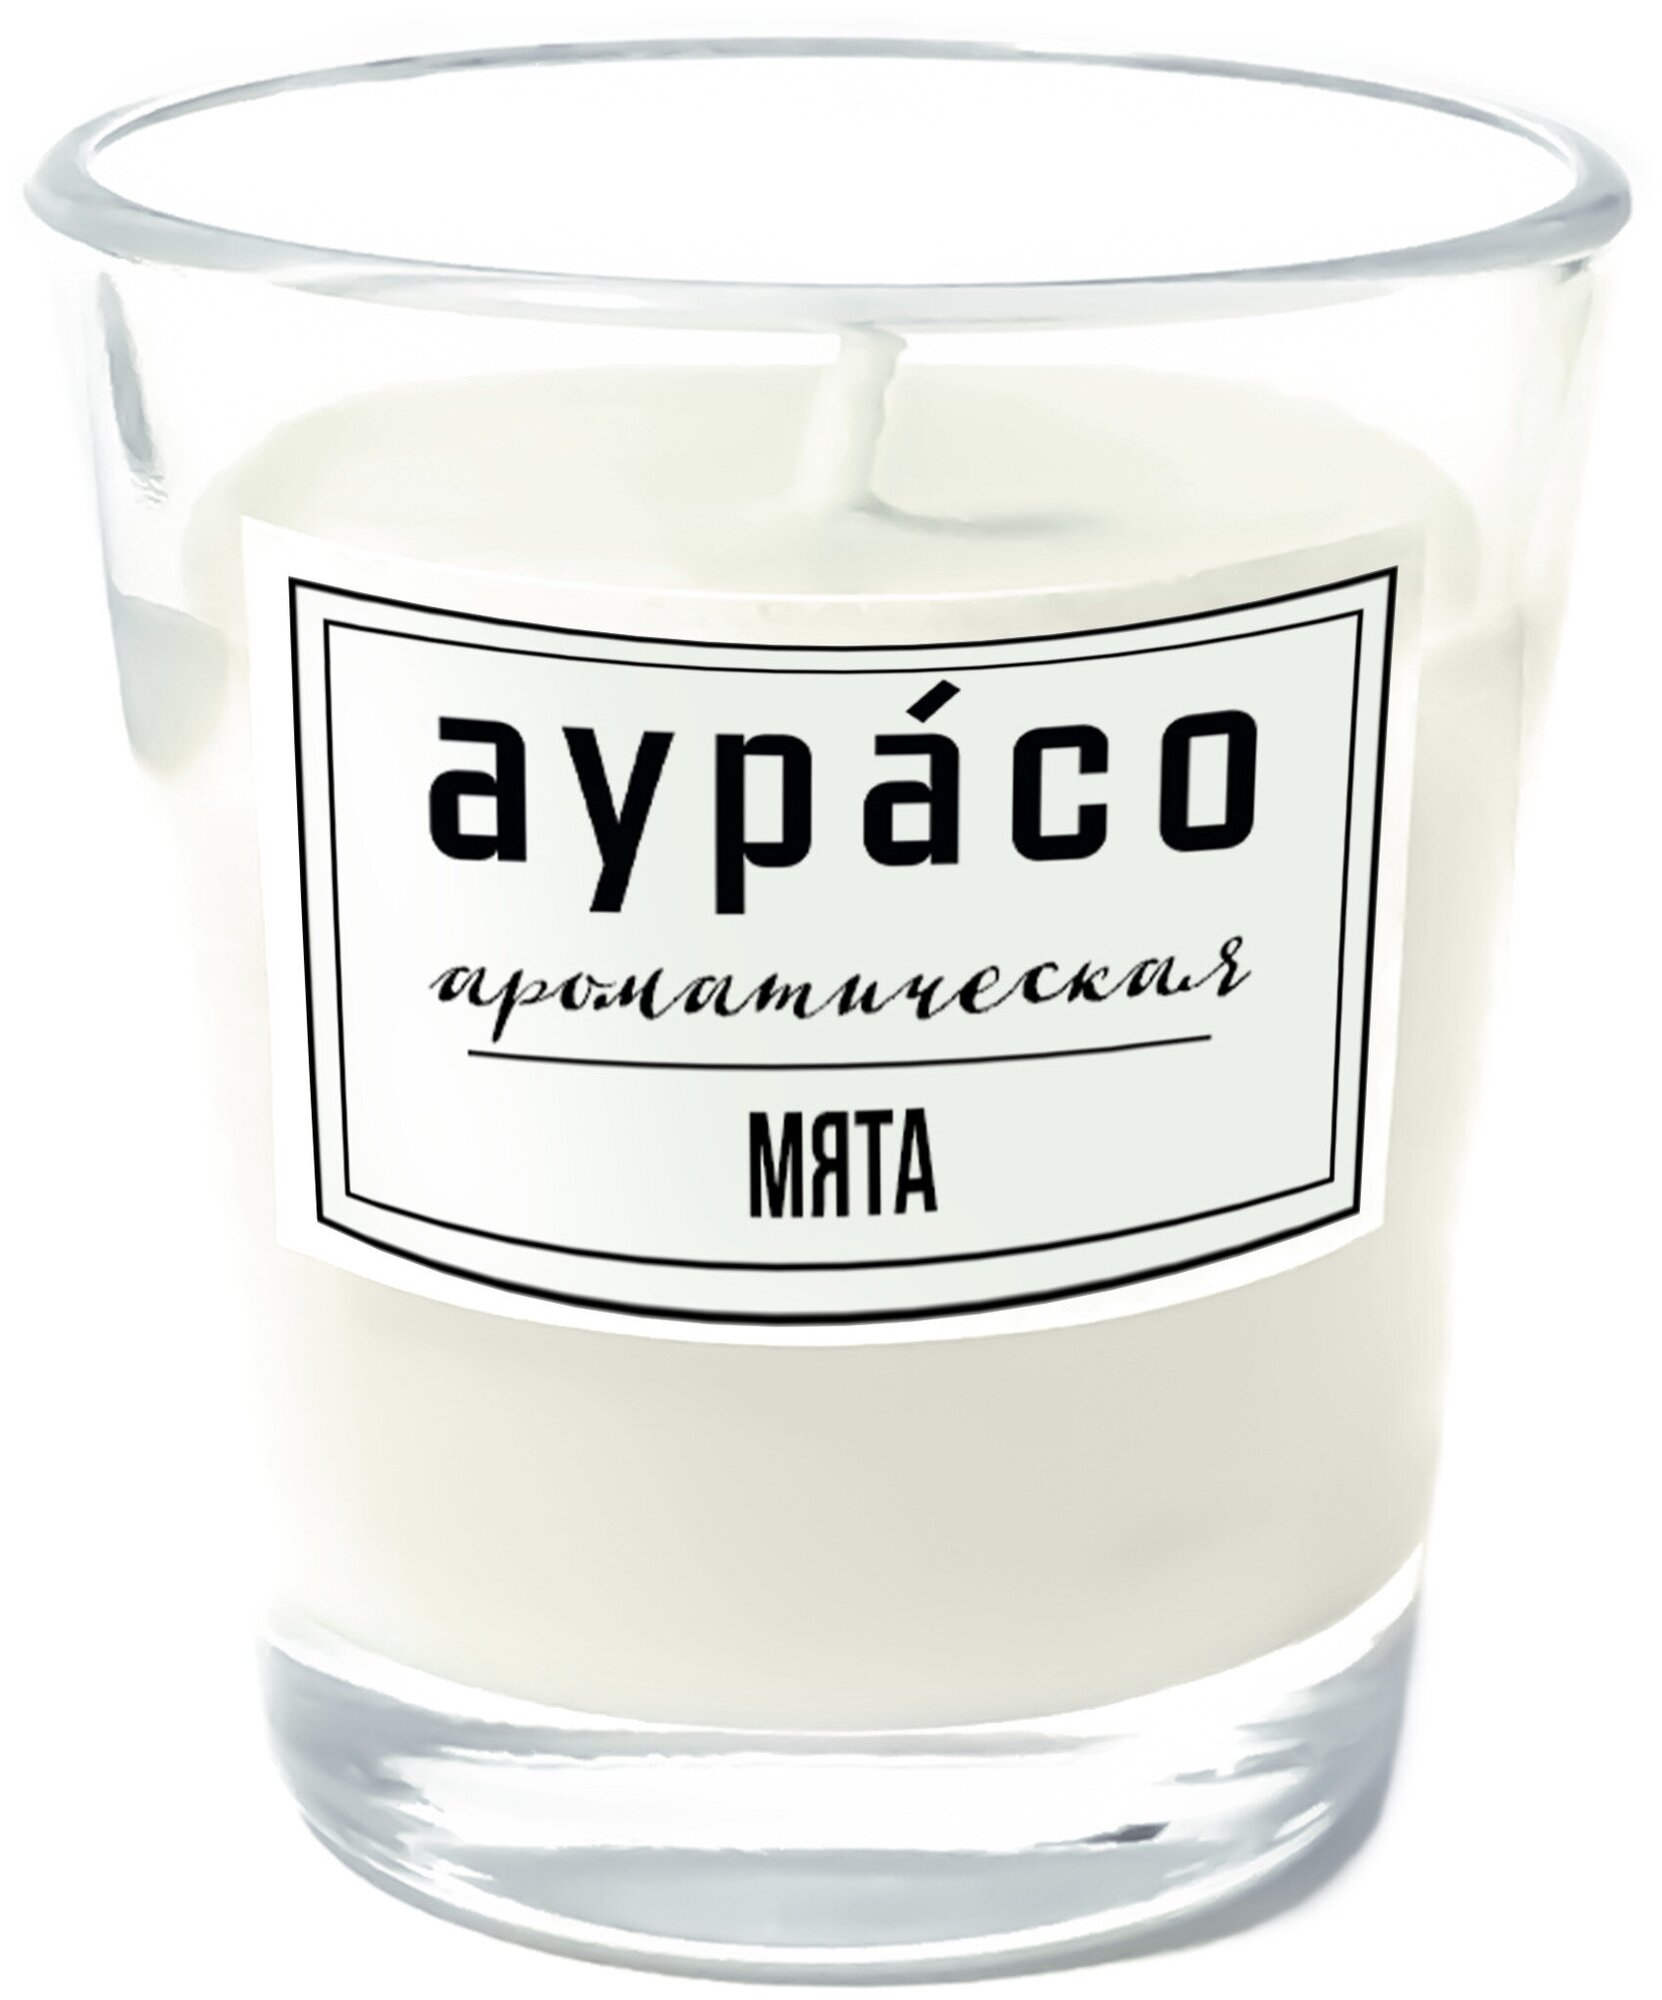 Мята - ароматическая свеча Аурасо из 100 % соевого воска, 5x4 см, 100 гр, белая, 1 шт.